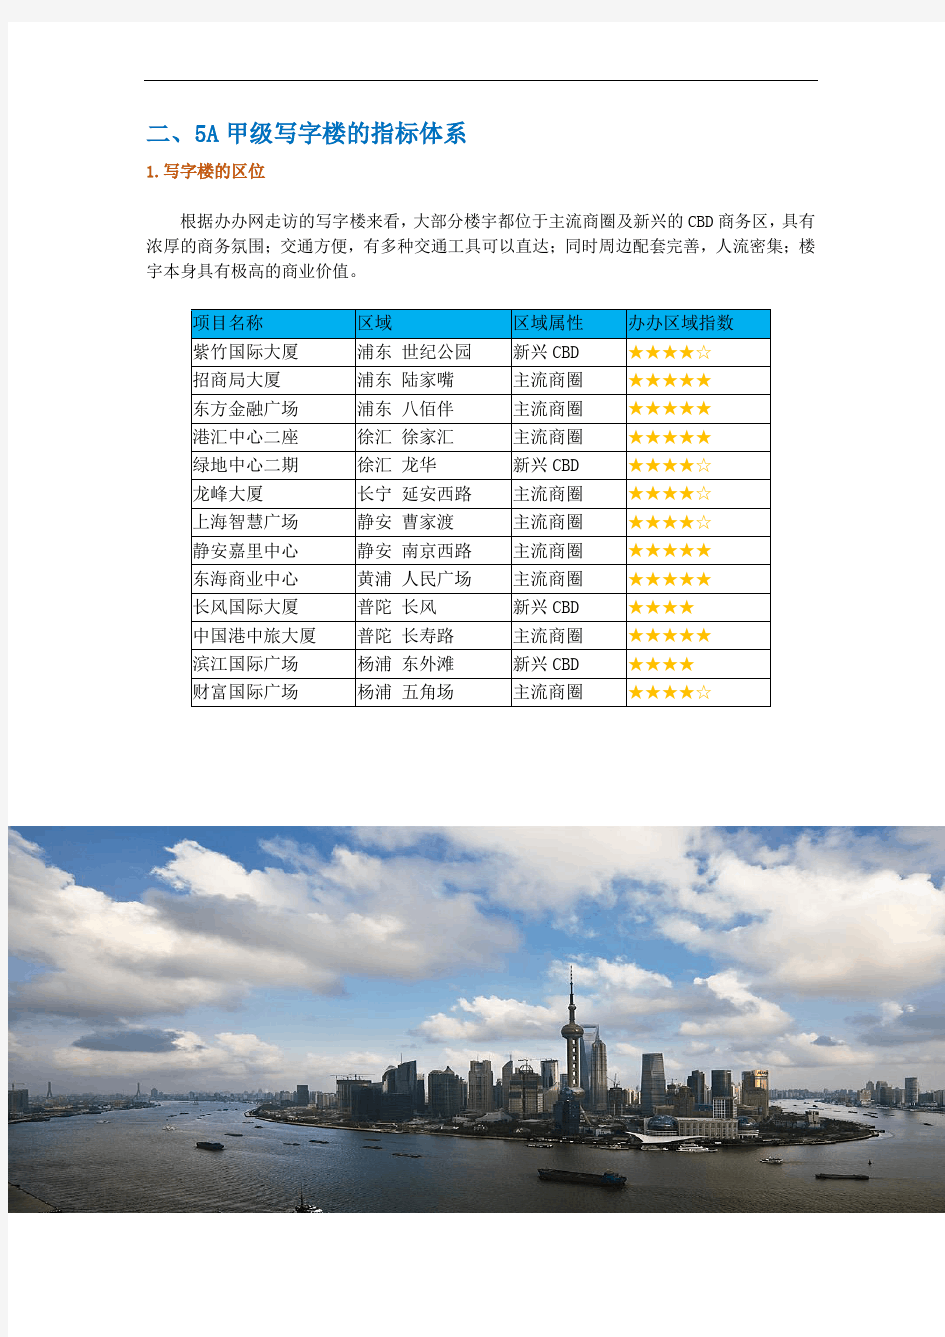 上海市 A甲级写字楼行业标准评估报告